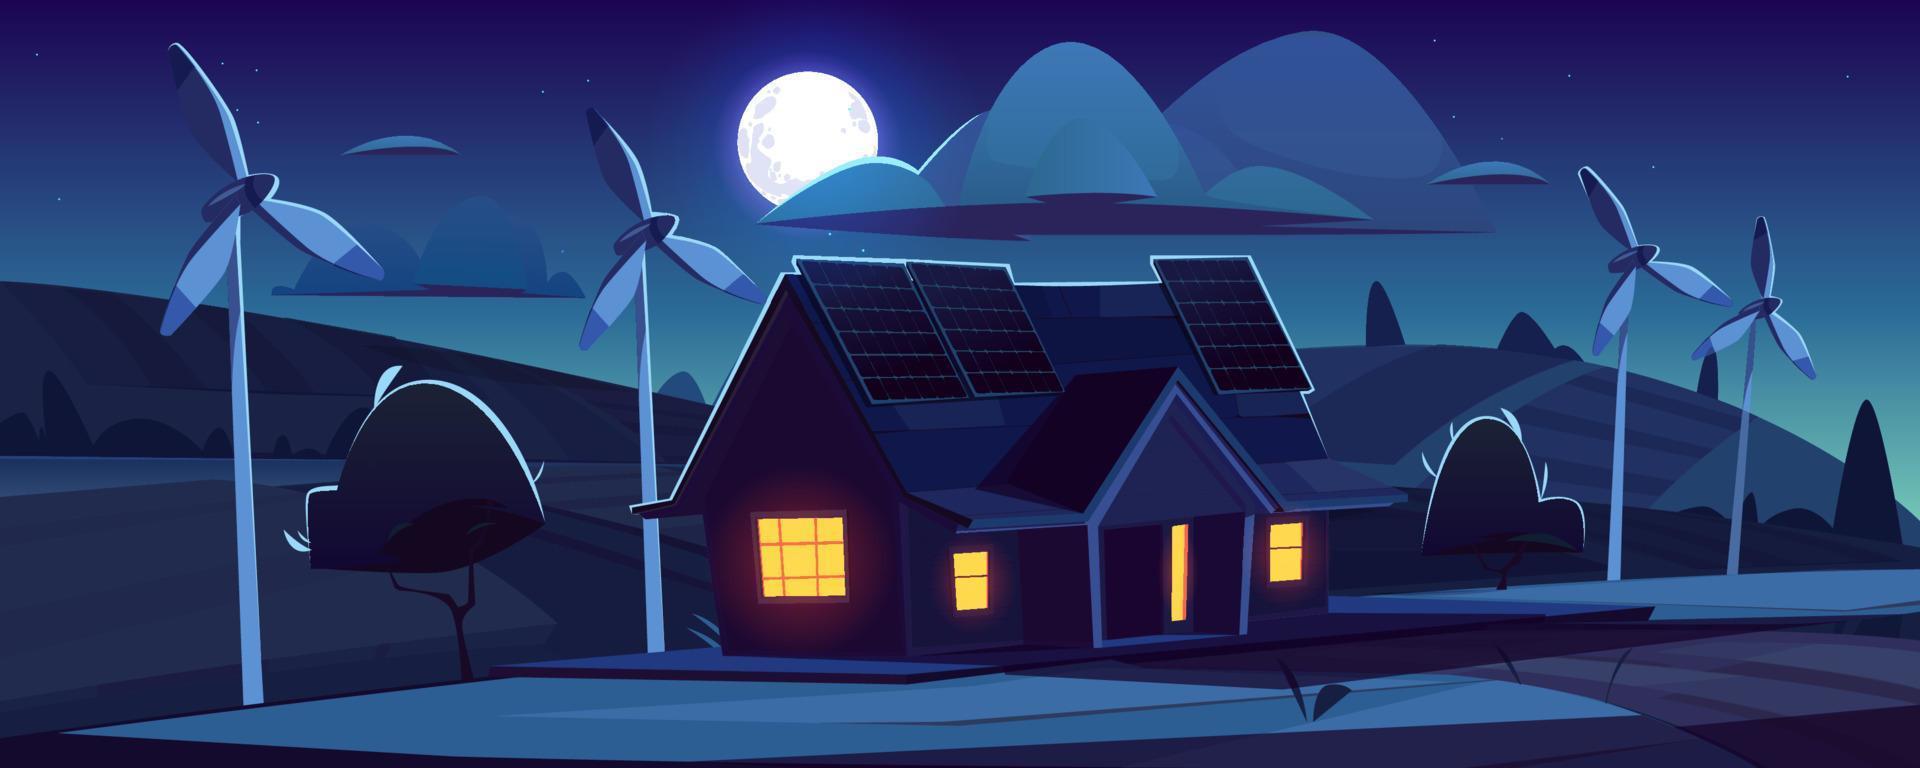 Haus mit Sonnenkollektoren und Windkraftanlagen in der Nacht vektor